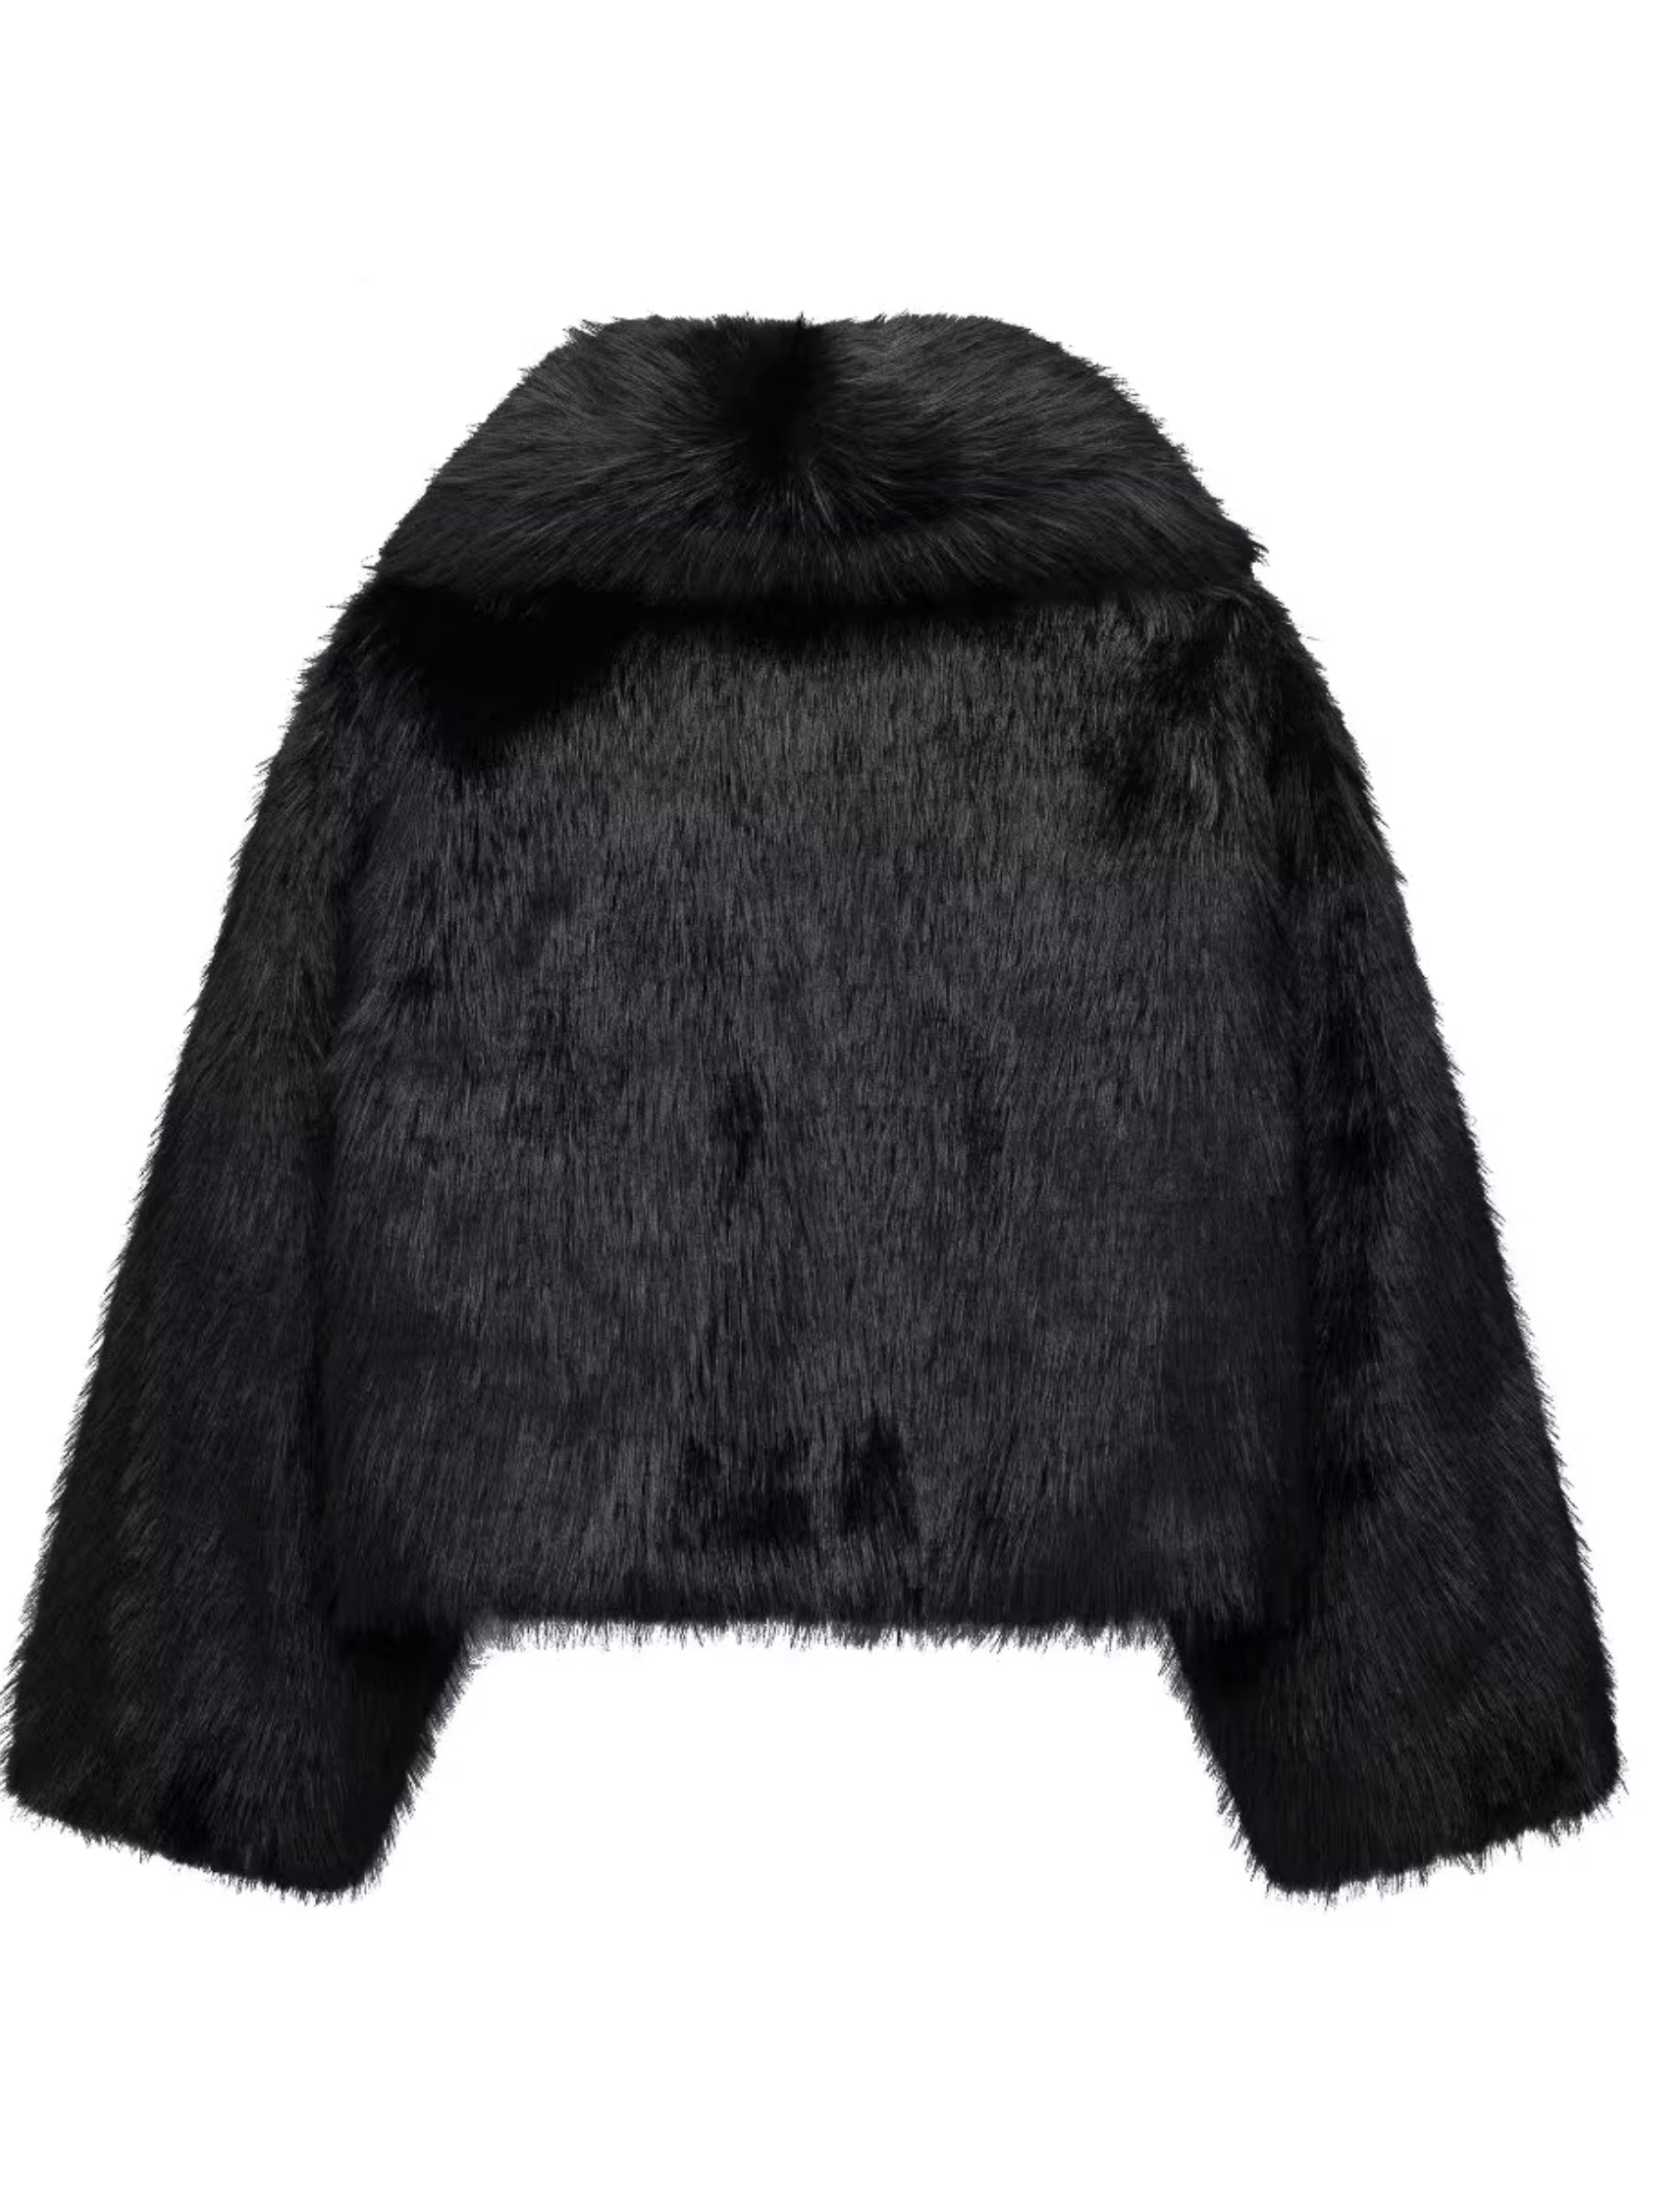 LaPose Fashion - Aniya Faux Fur Loose Jacket - Coats & Jackets, Crop Jackets, Jackets, Oversize Jacket, Puffer Jacket, Winter Edit